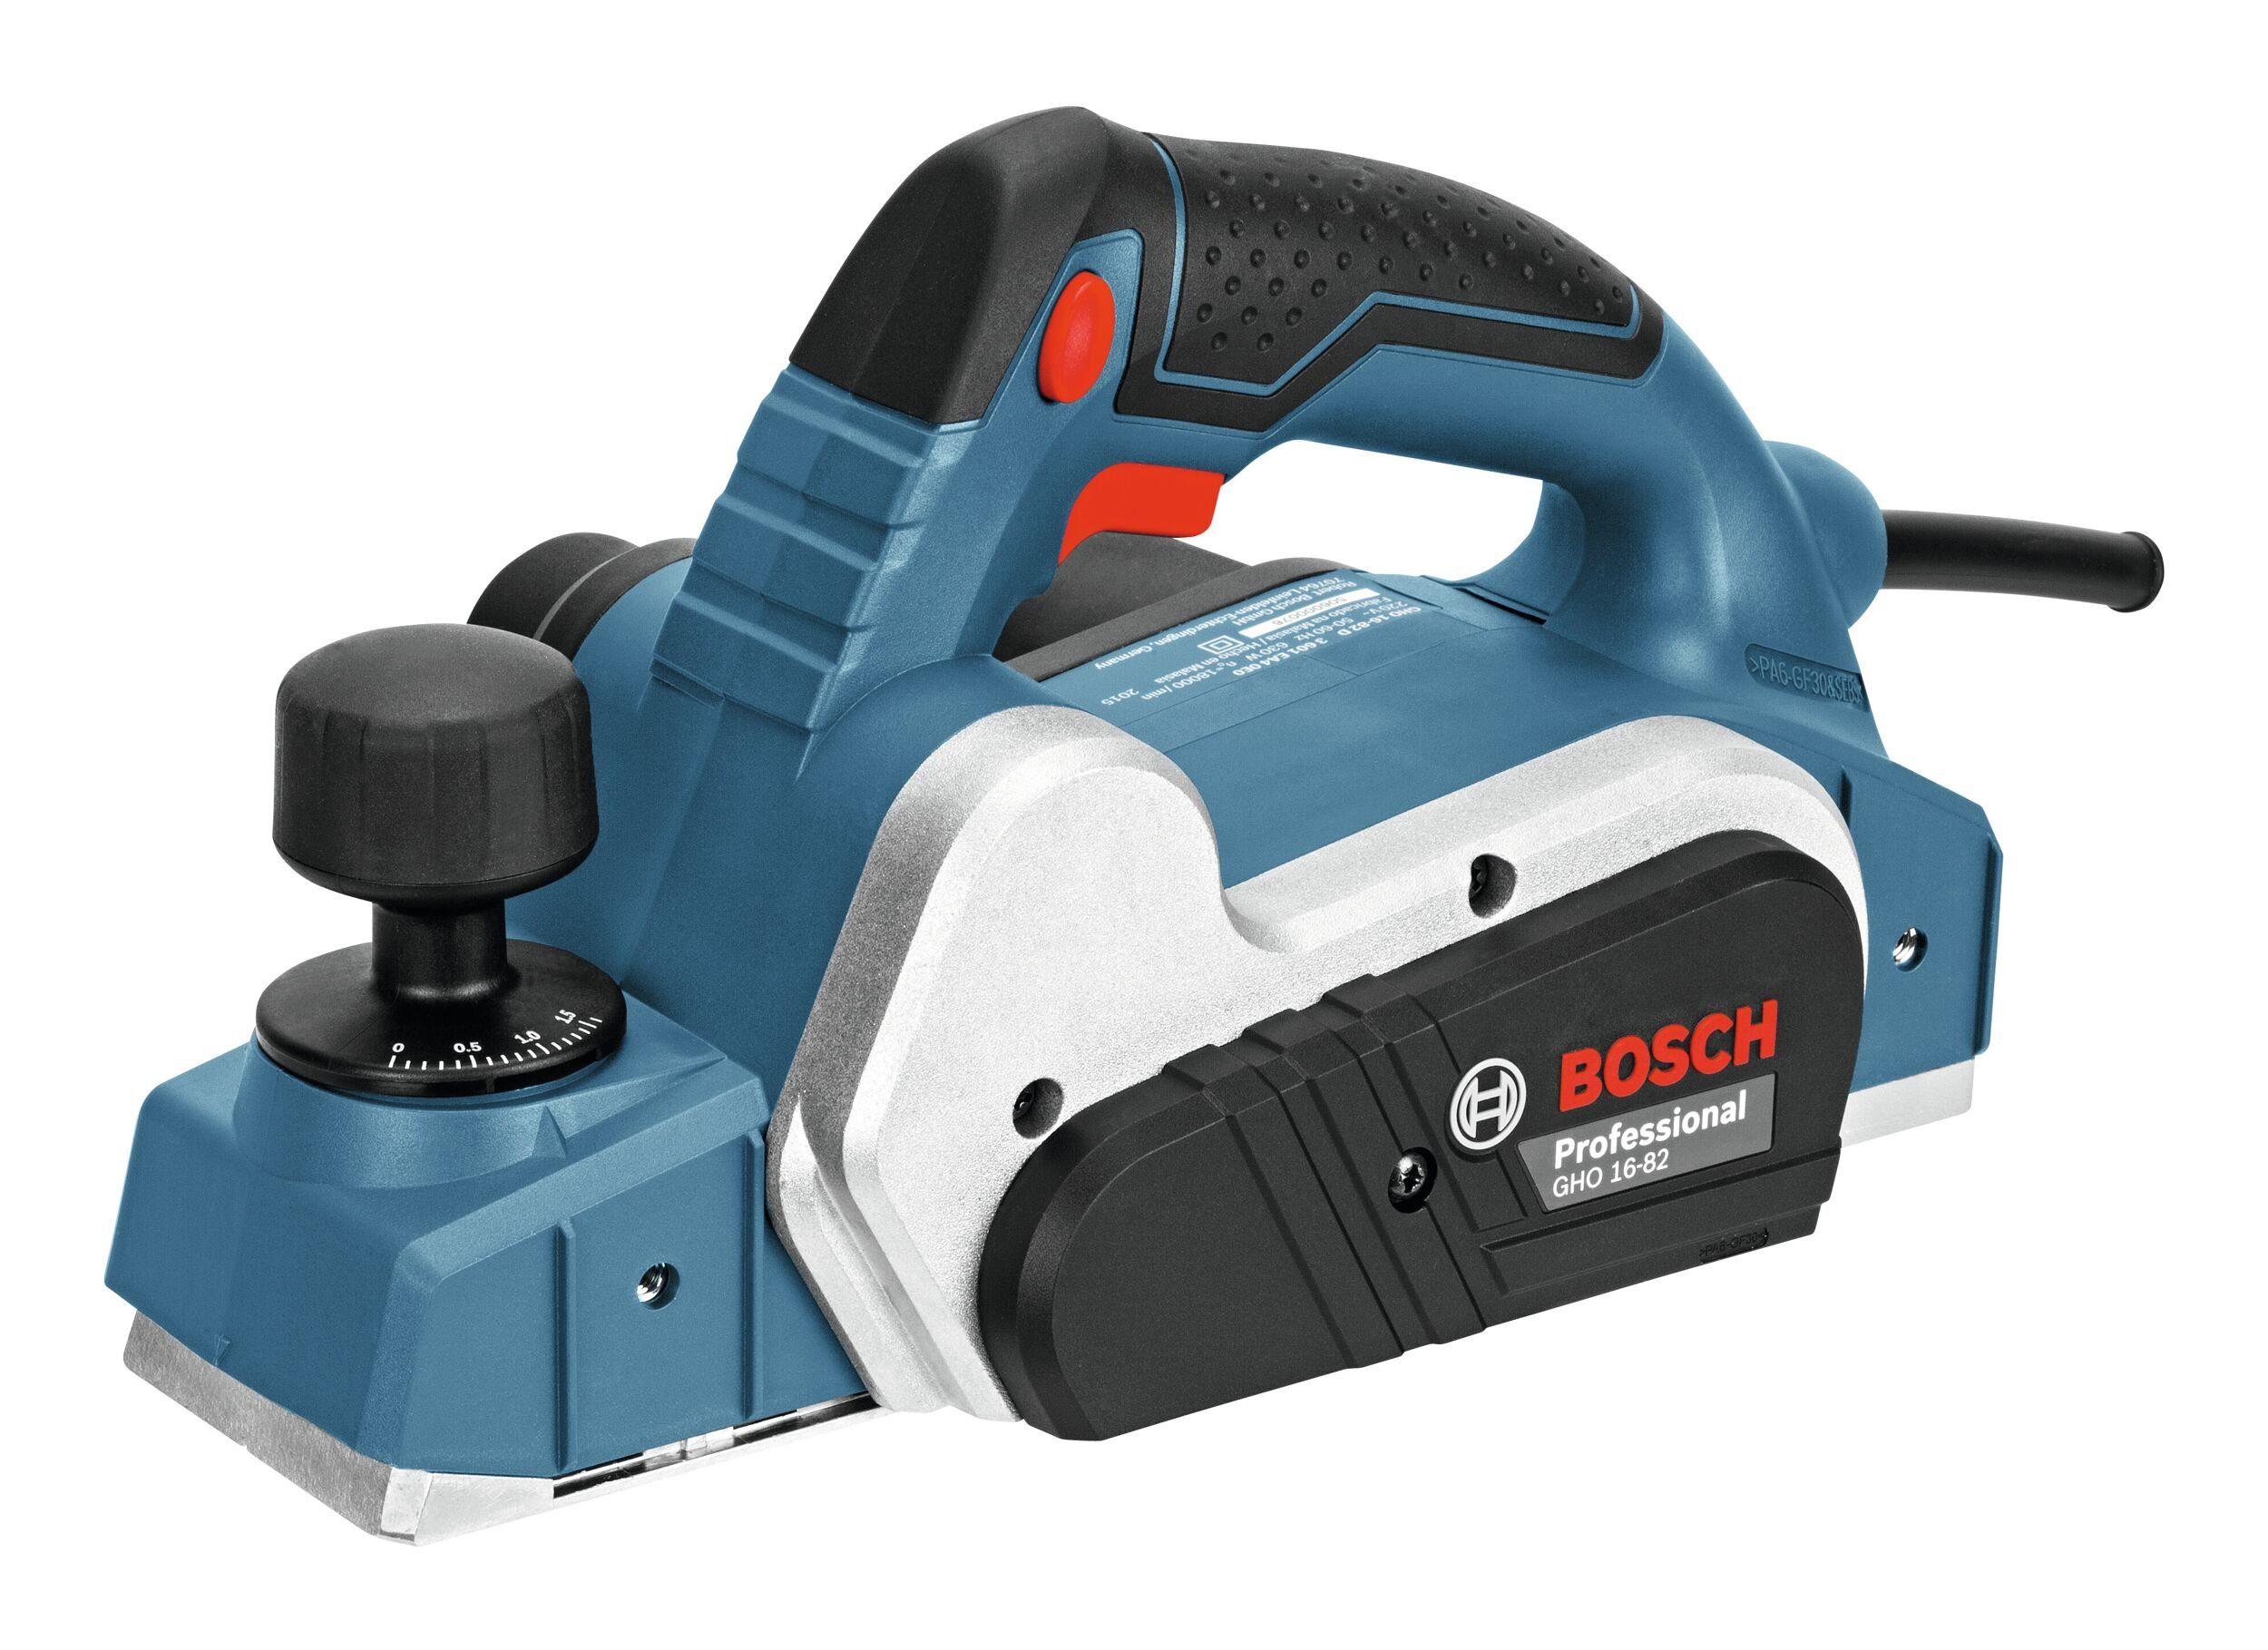 Bosch im in GHO Hobelbreite: Elektrohobel Karton mm, Professional - 16-82, 82 Hobel